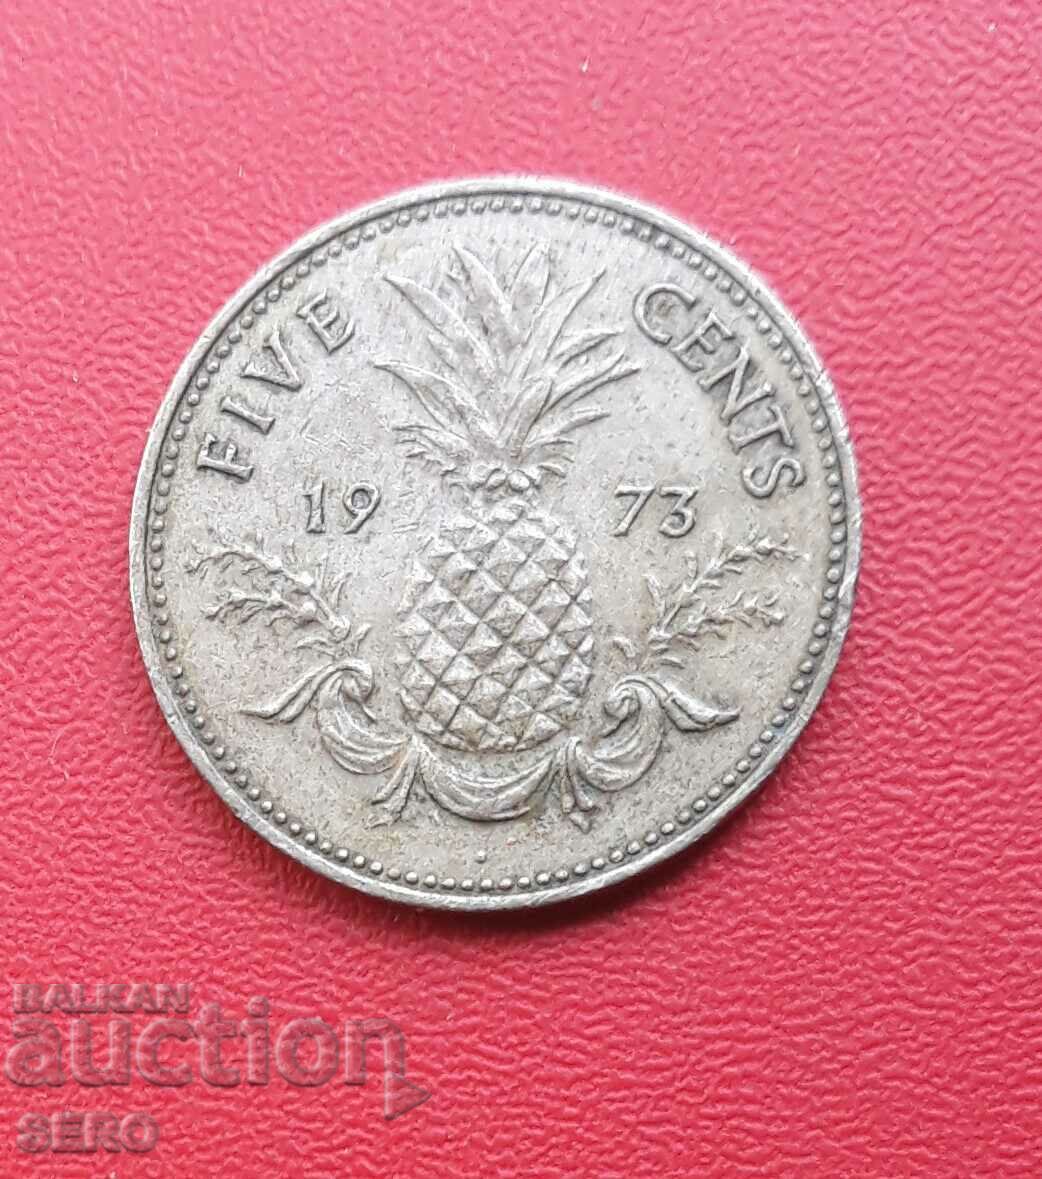 Μπαχάμες-5 cents 1973-small mintage 21 τεμ.